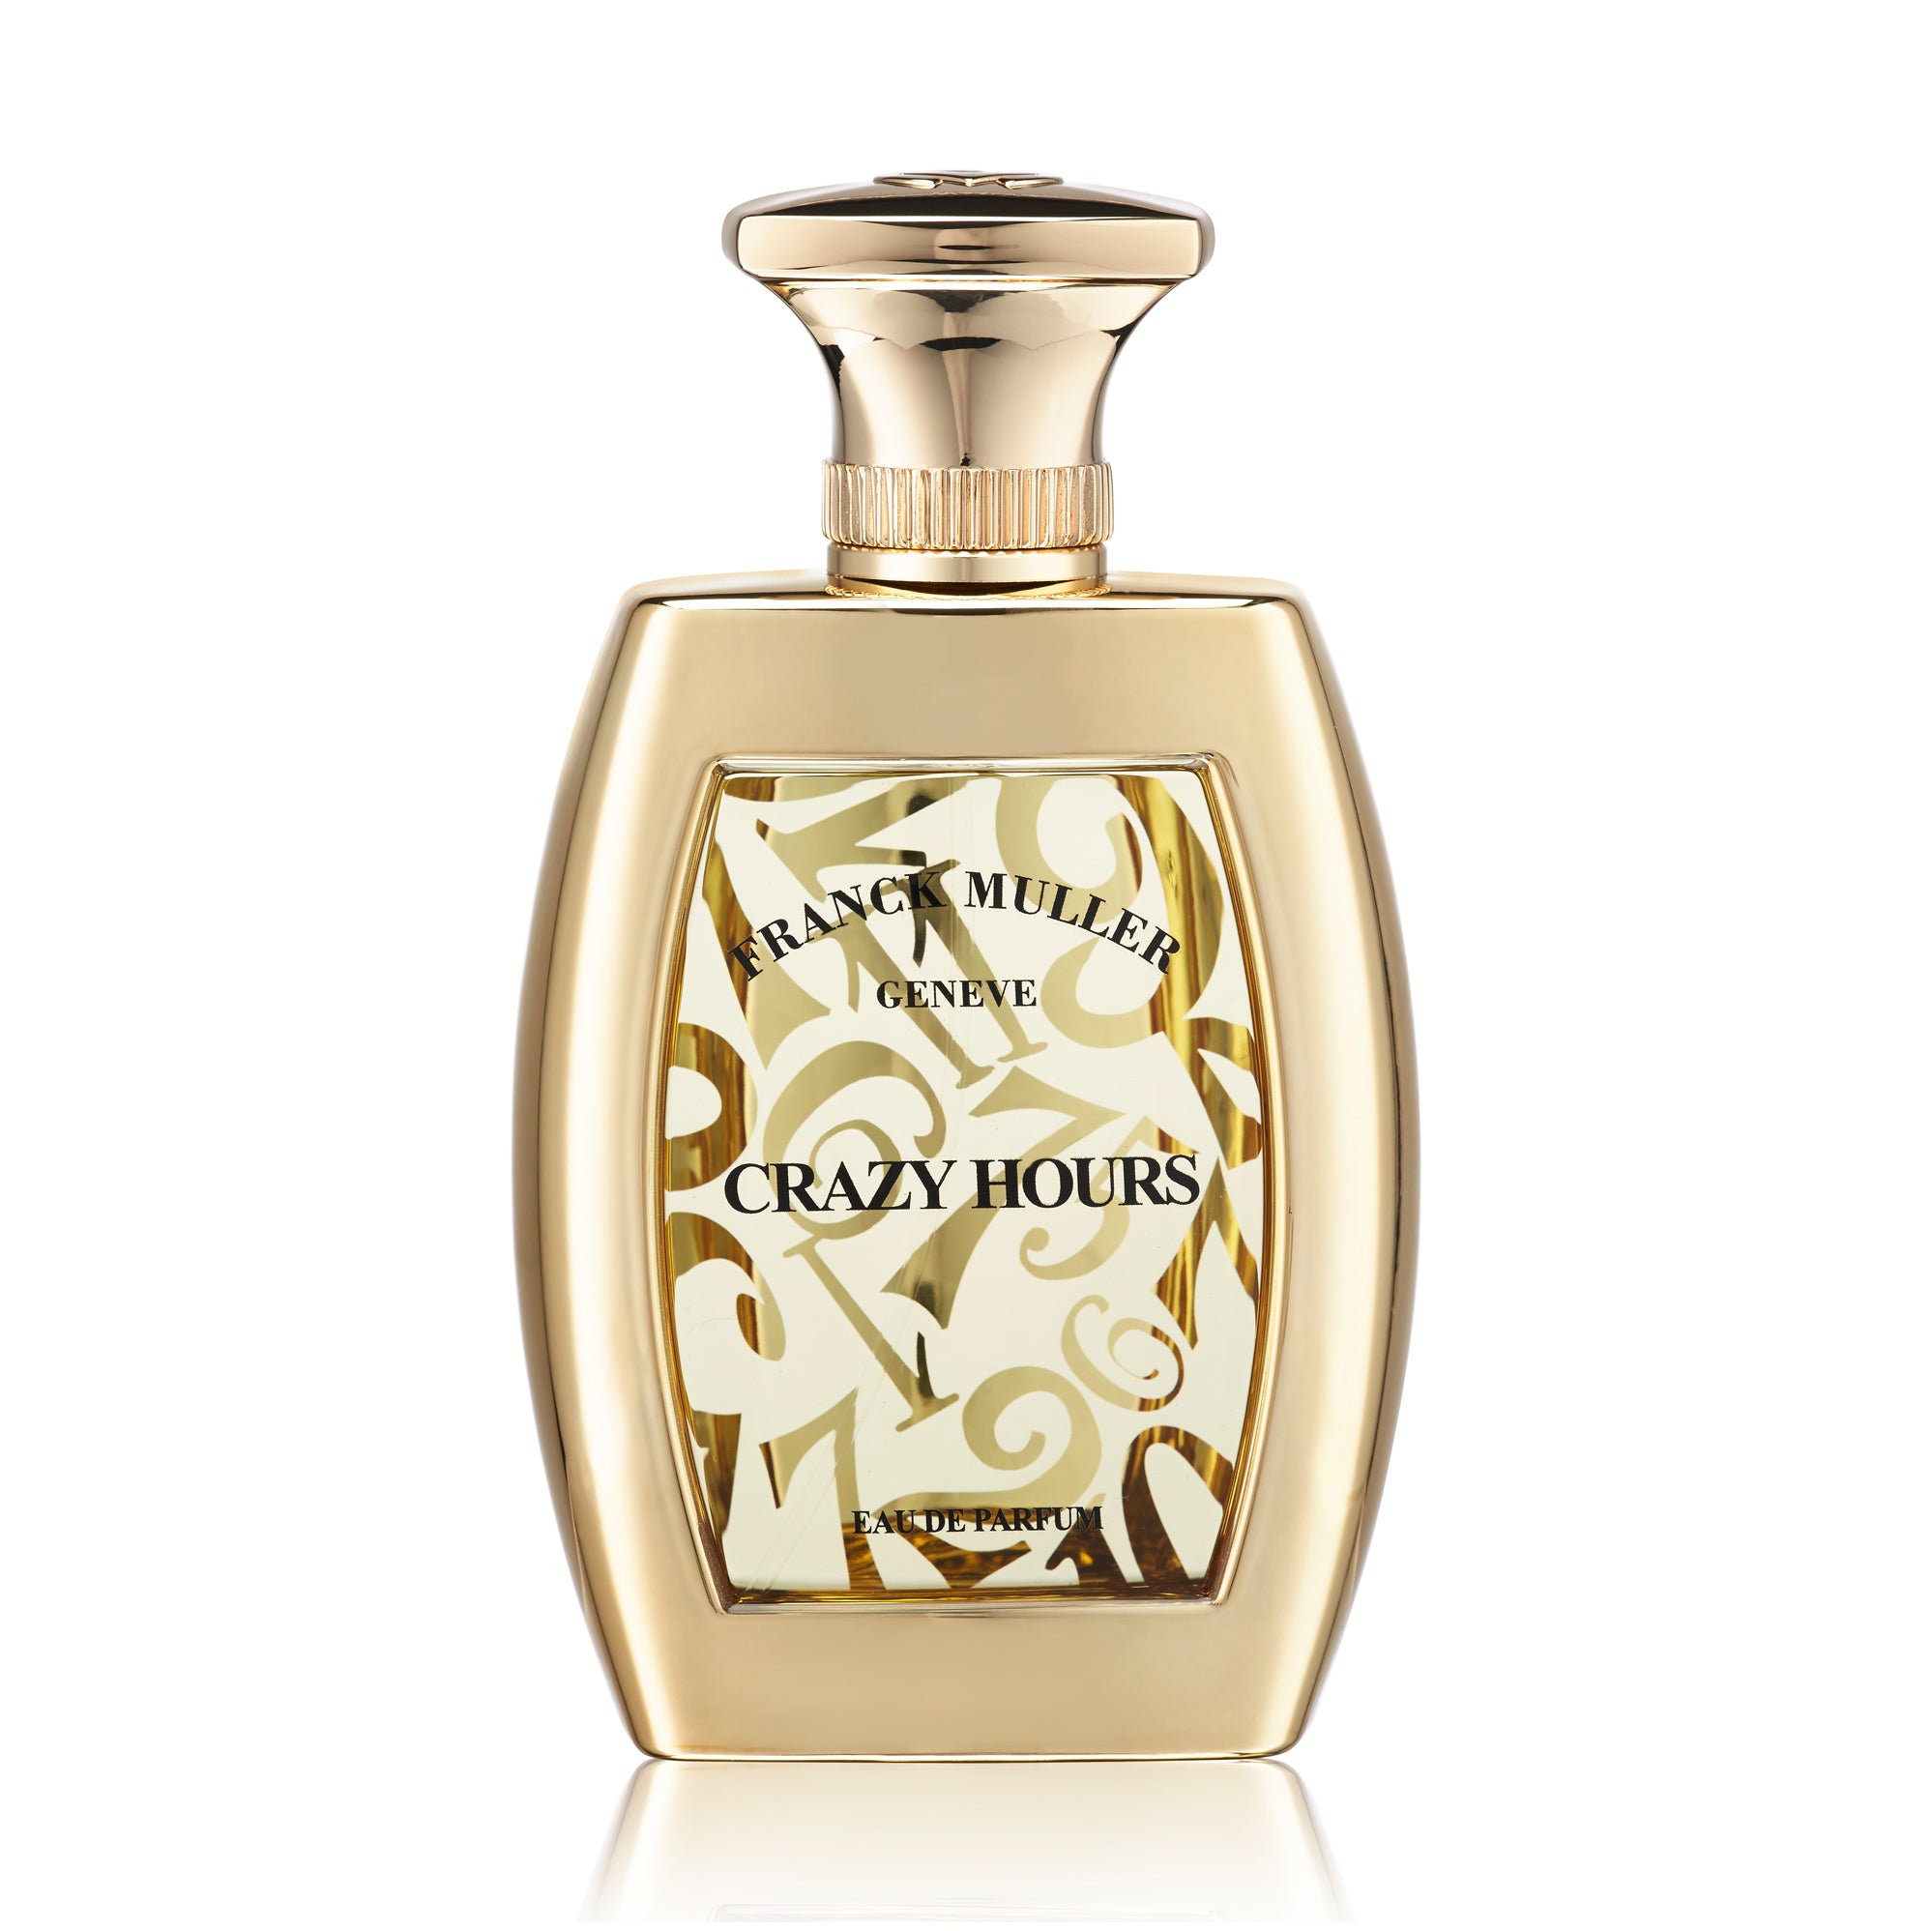 Crazy Hours 75ml Eau de Parfum Bottle by Franck Muller